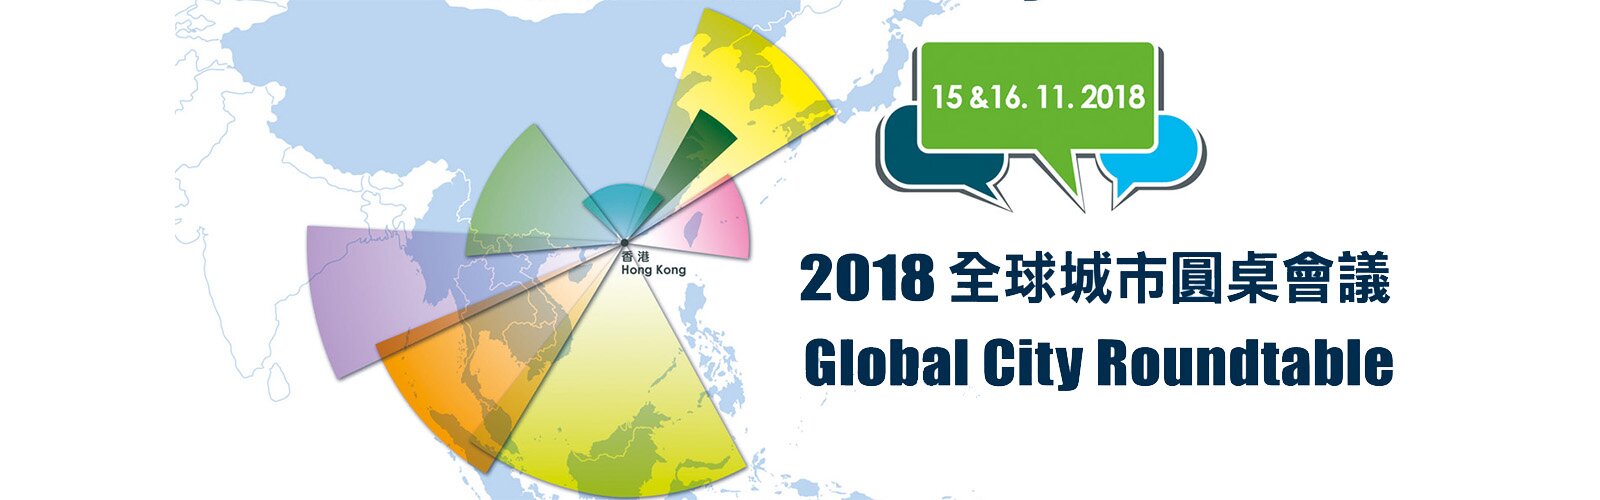 2018全球城市圓桌會議